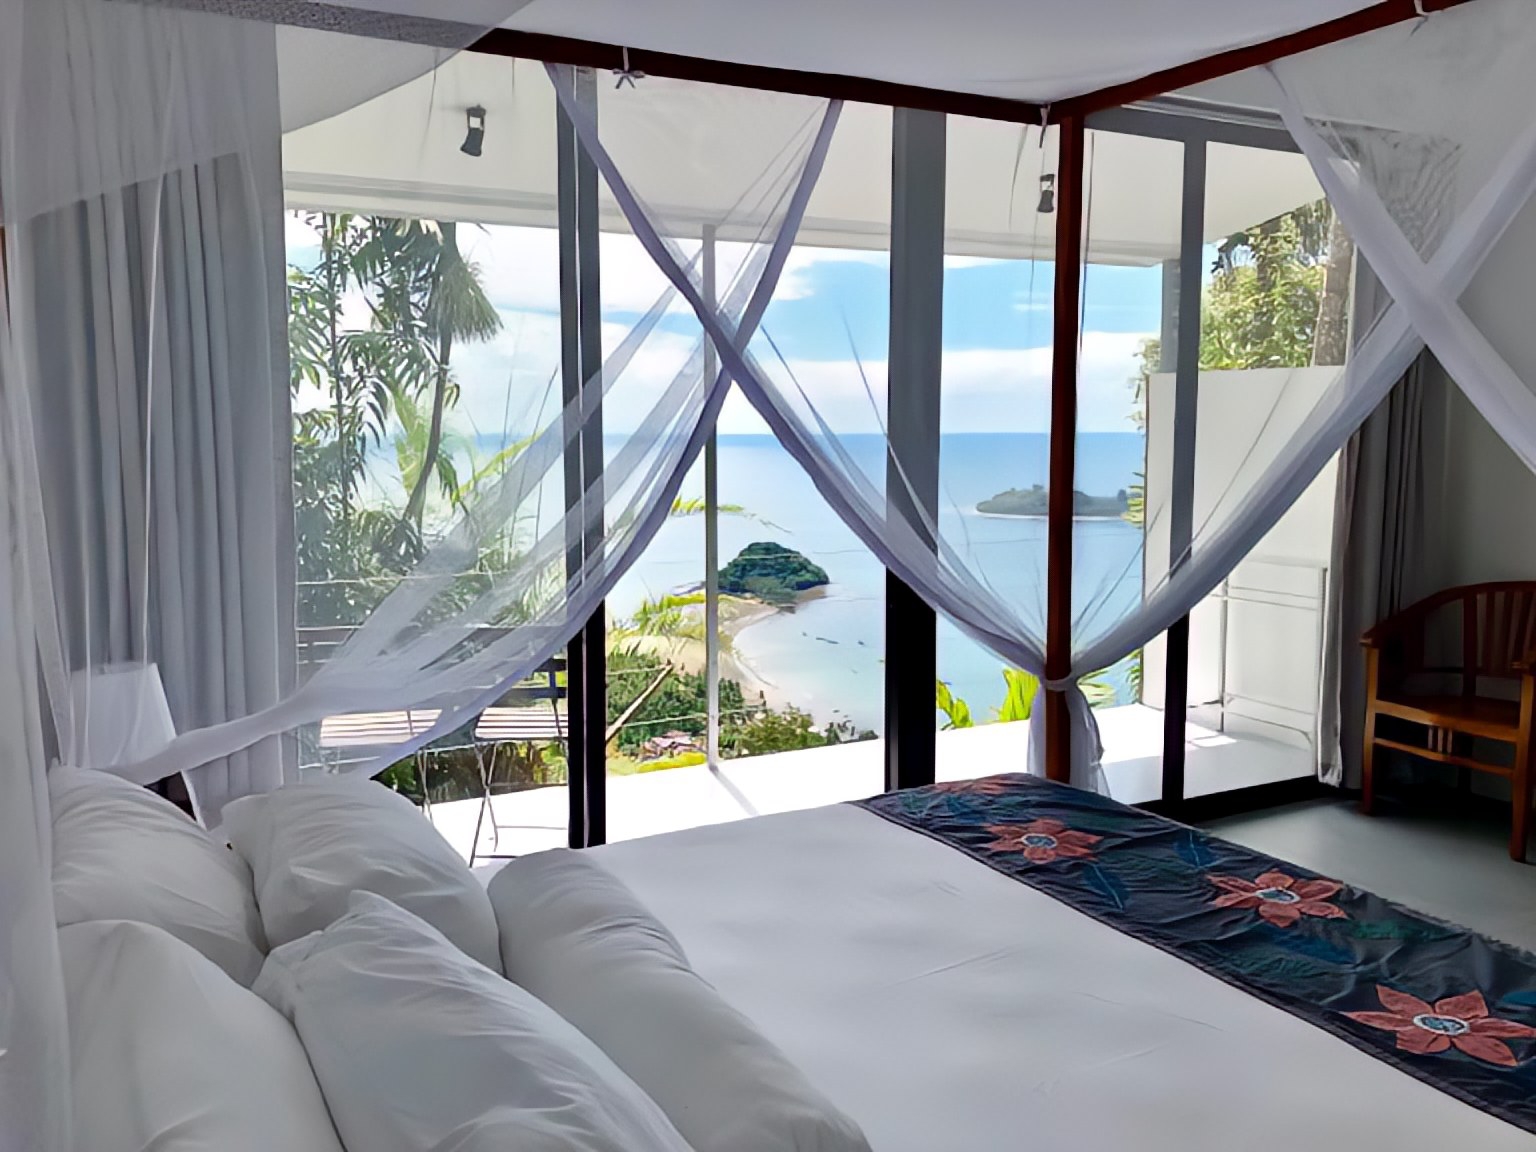 4 Villa Terbaik di Padang untuk Staycation Sambil Menikmati Pemandangan yang Indah